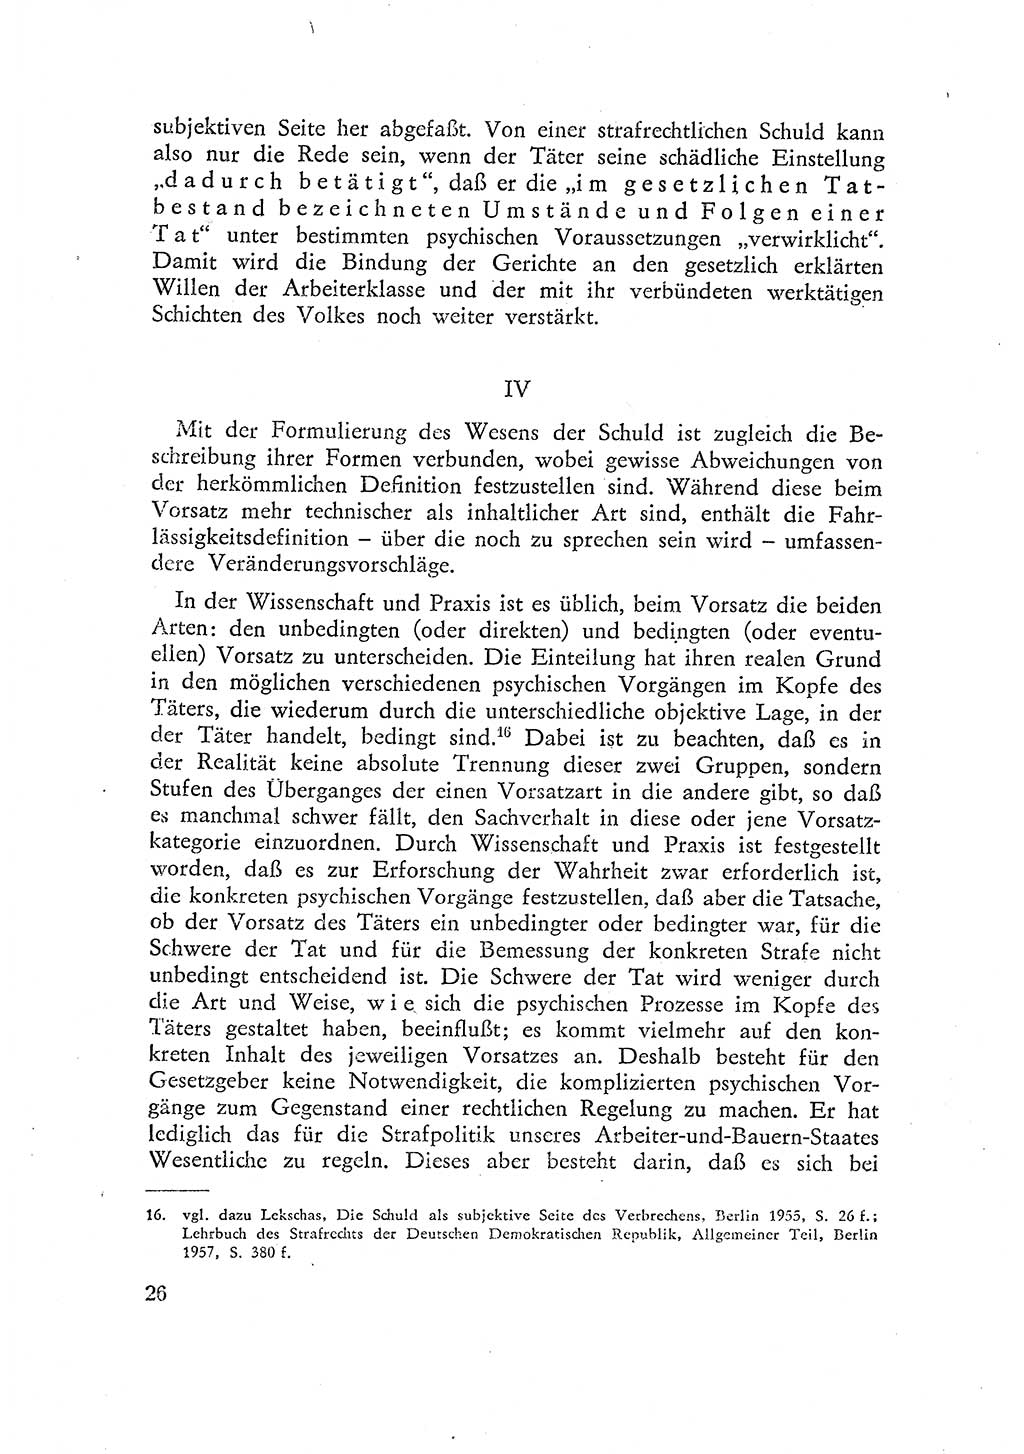 Beiträge zum Strafrecht [Deutsche Demokratische Republik (DDR)] 1959, Seite 26 (Beitr. Strafr. DDR 1959, S. 26)